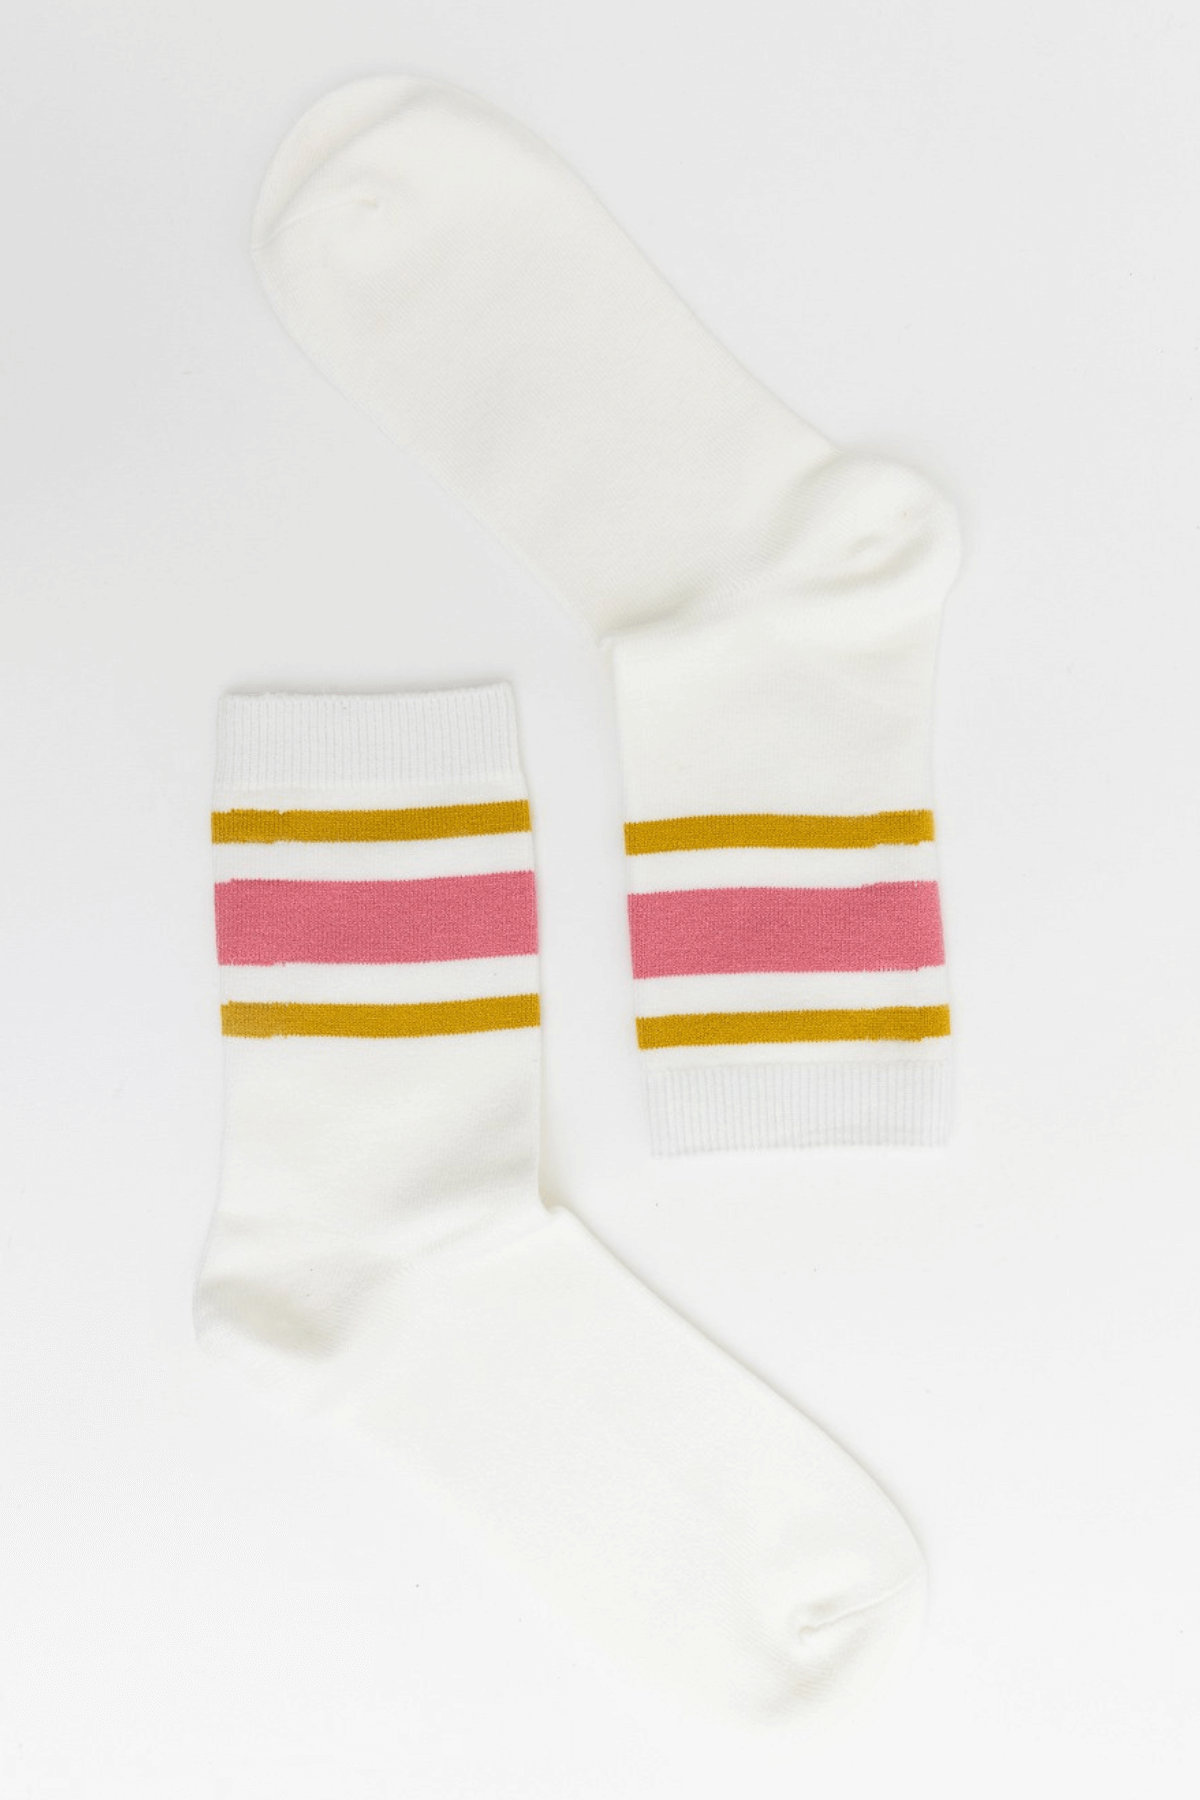 Leto Retro Stripe Style Crew Socks